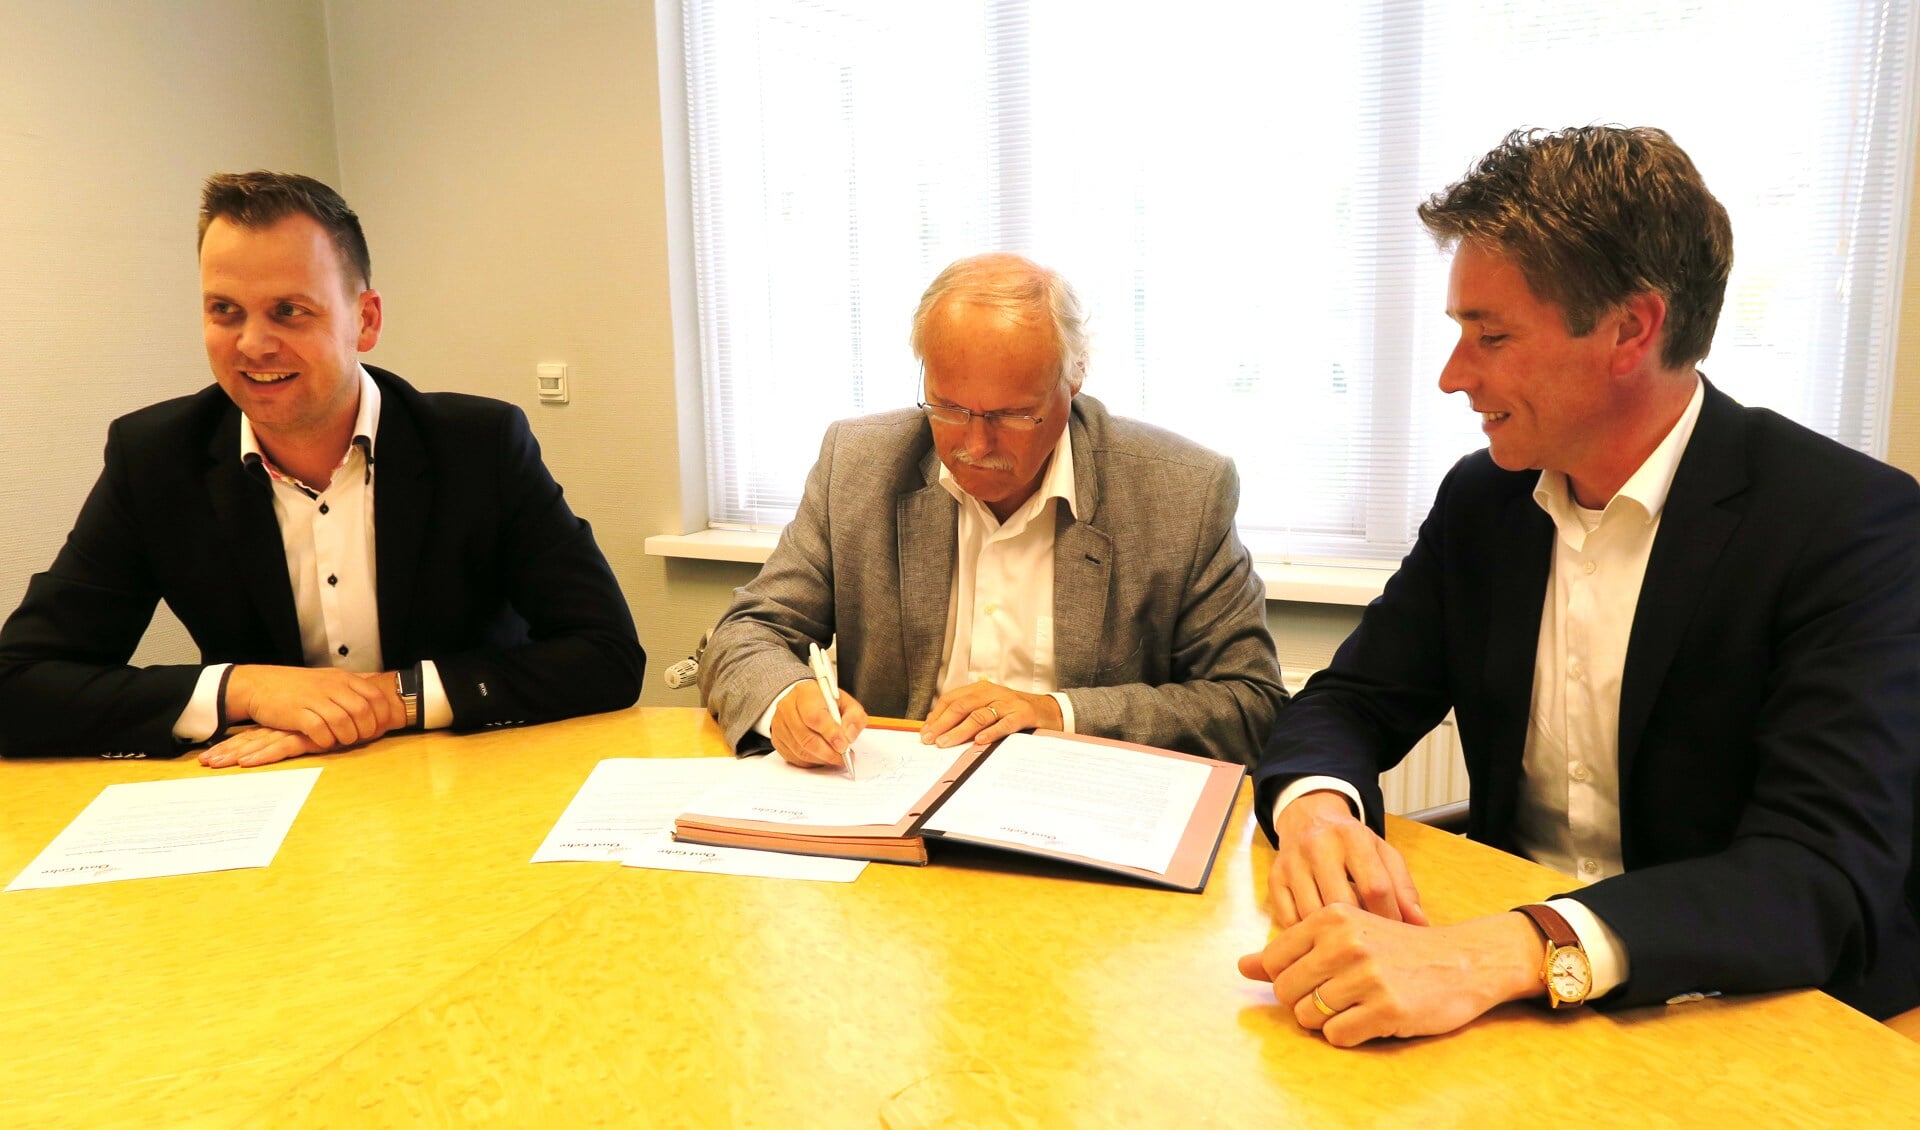 De ondertekening van het contract met vlnr: Bart Wopereis, René Hoijtink en Koen Knufing. Foto: Theo Huijskes.